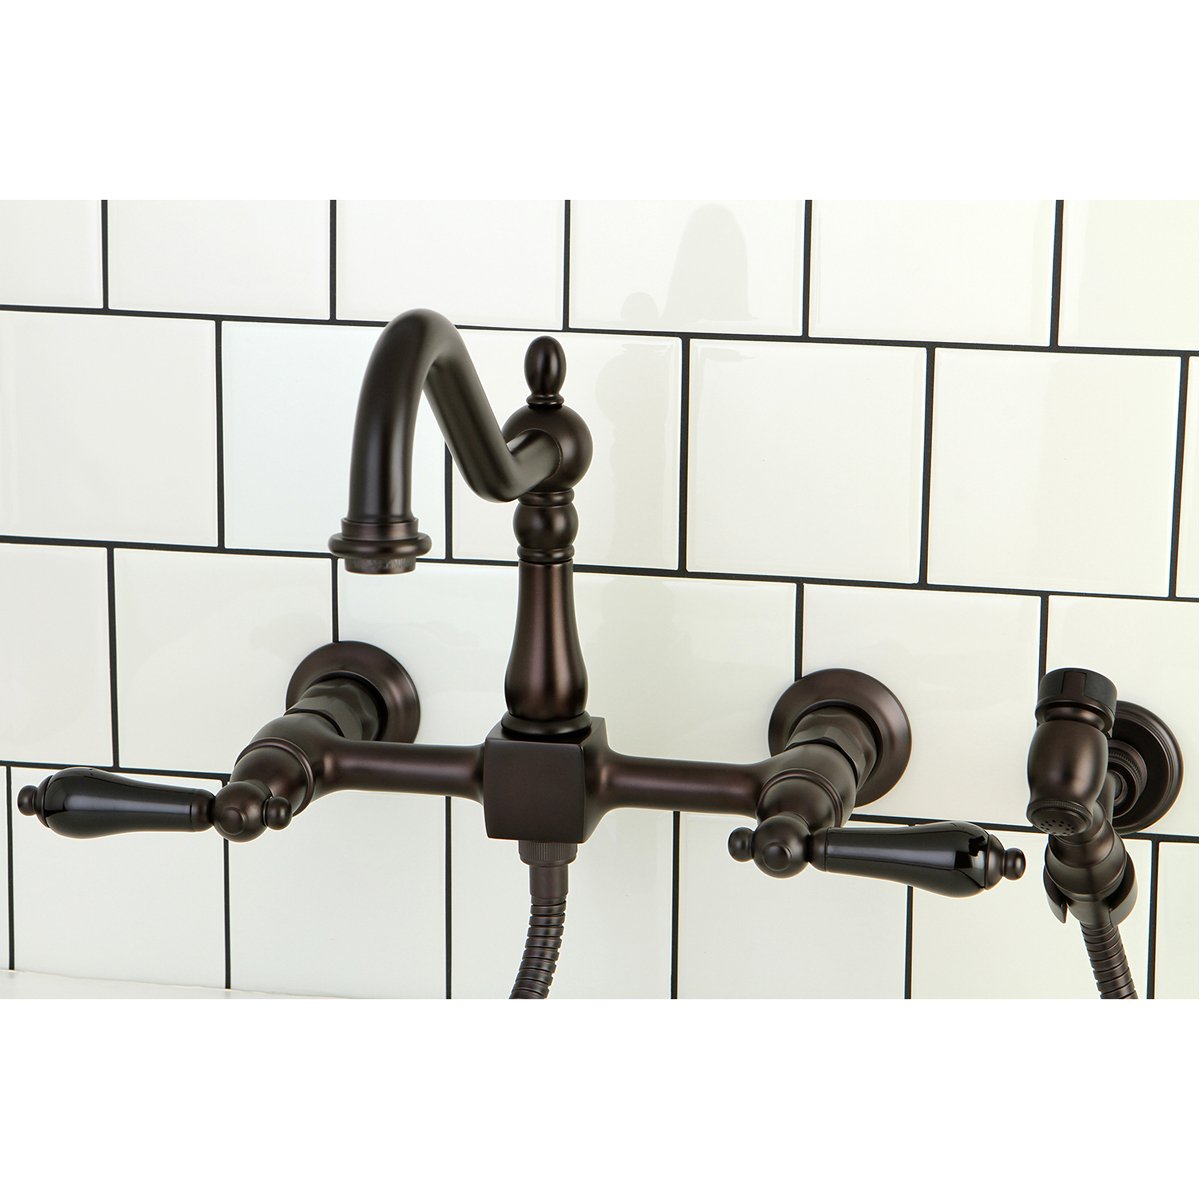 Kingston Brass Duchess 8-Inch Centerset Wall Mount Kitchen Faucet with Brass Sprayer